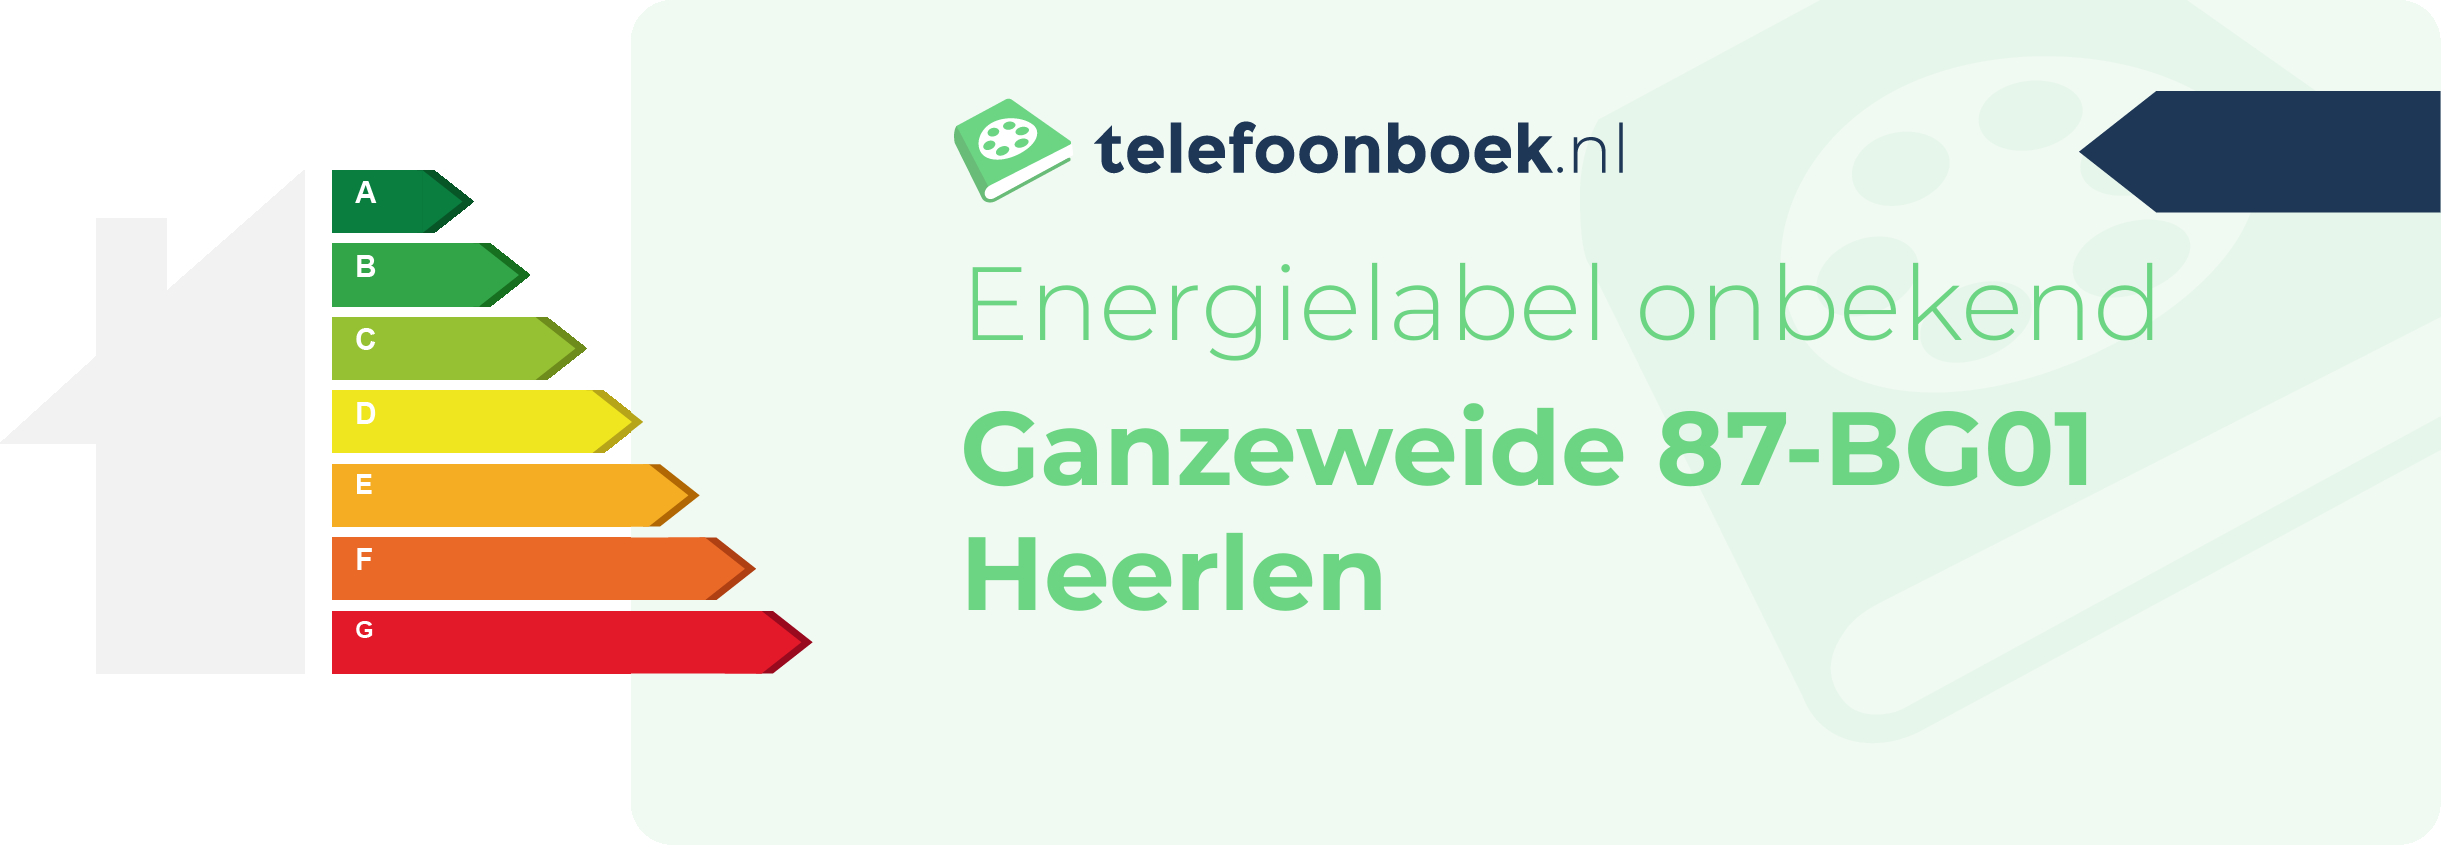 Energielabel Ganzeweide 87-BG01 Heerlen